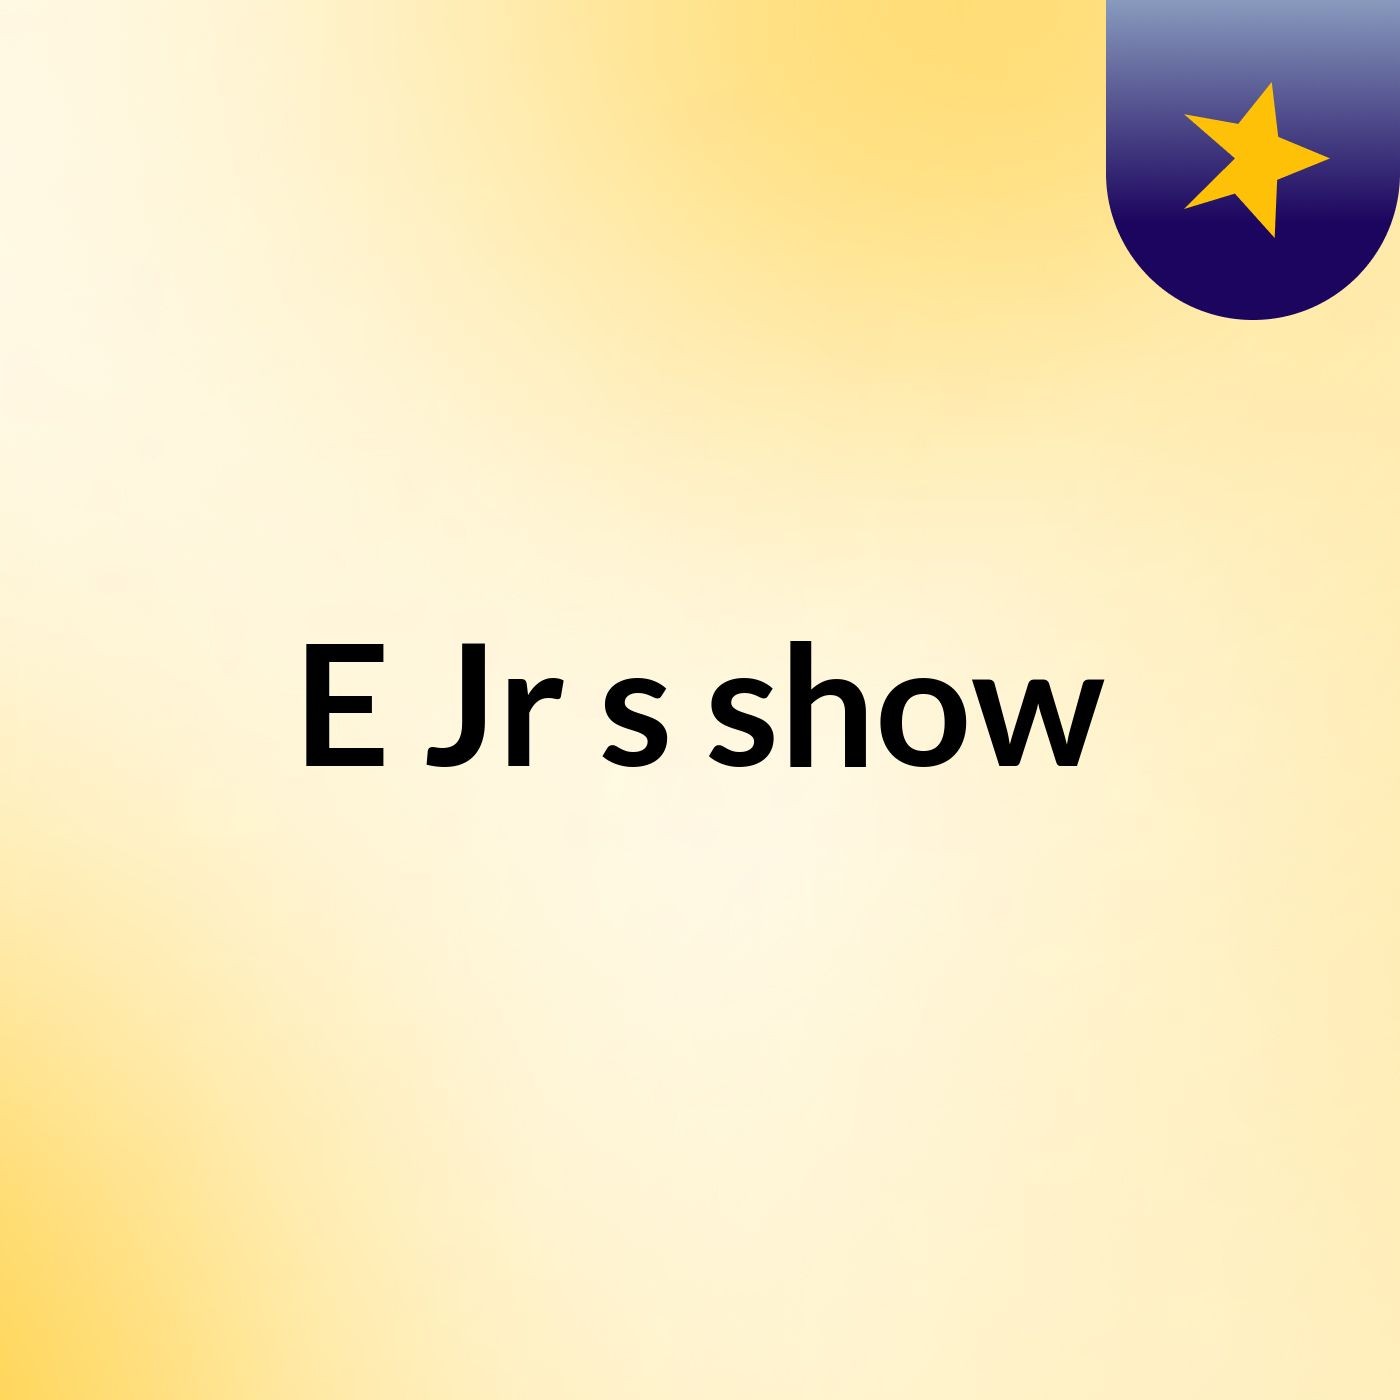 E Jr's show